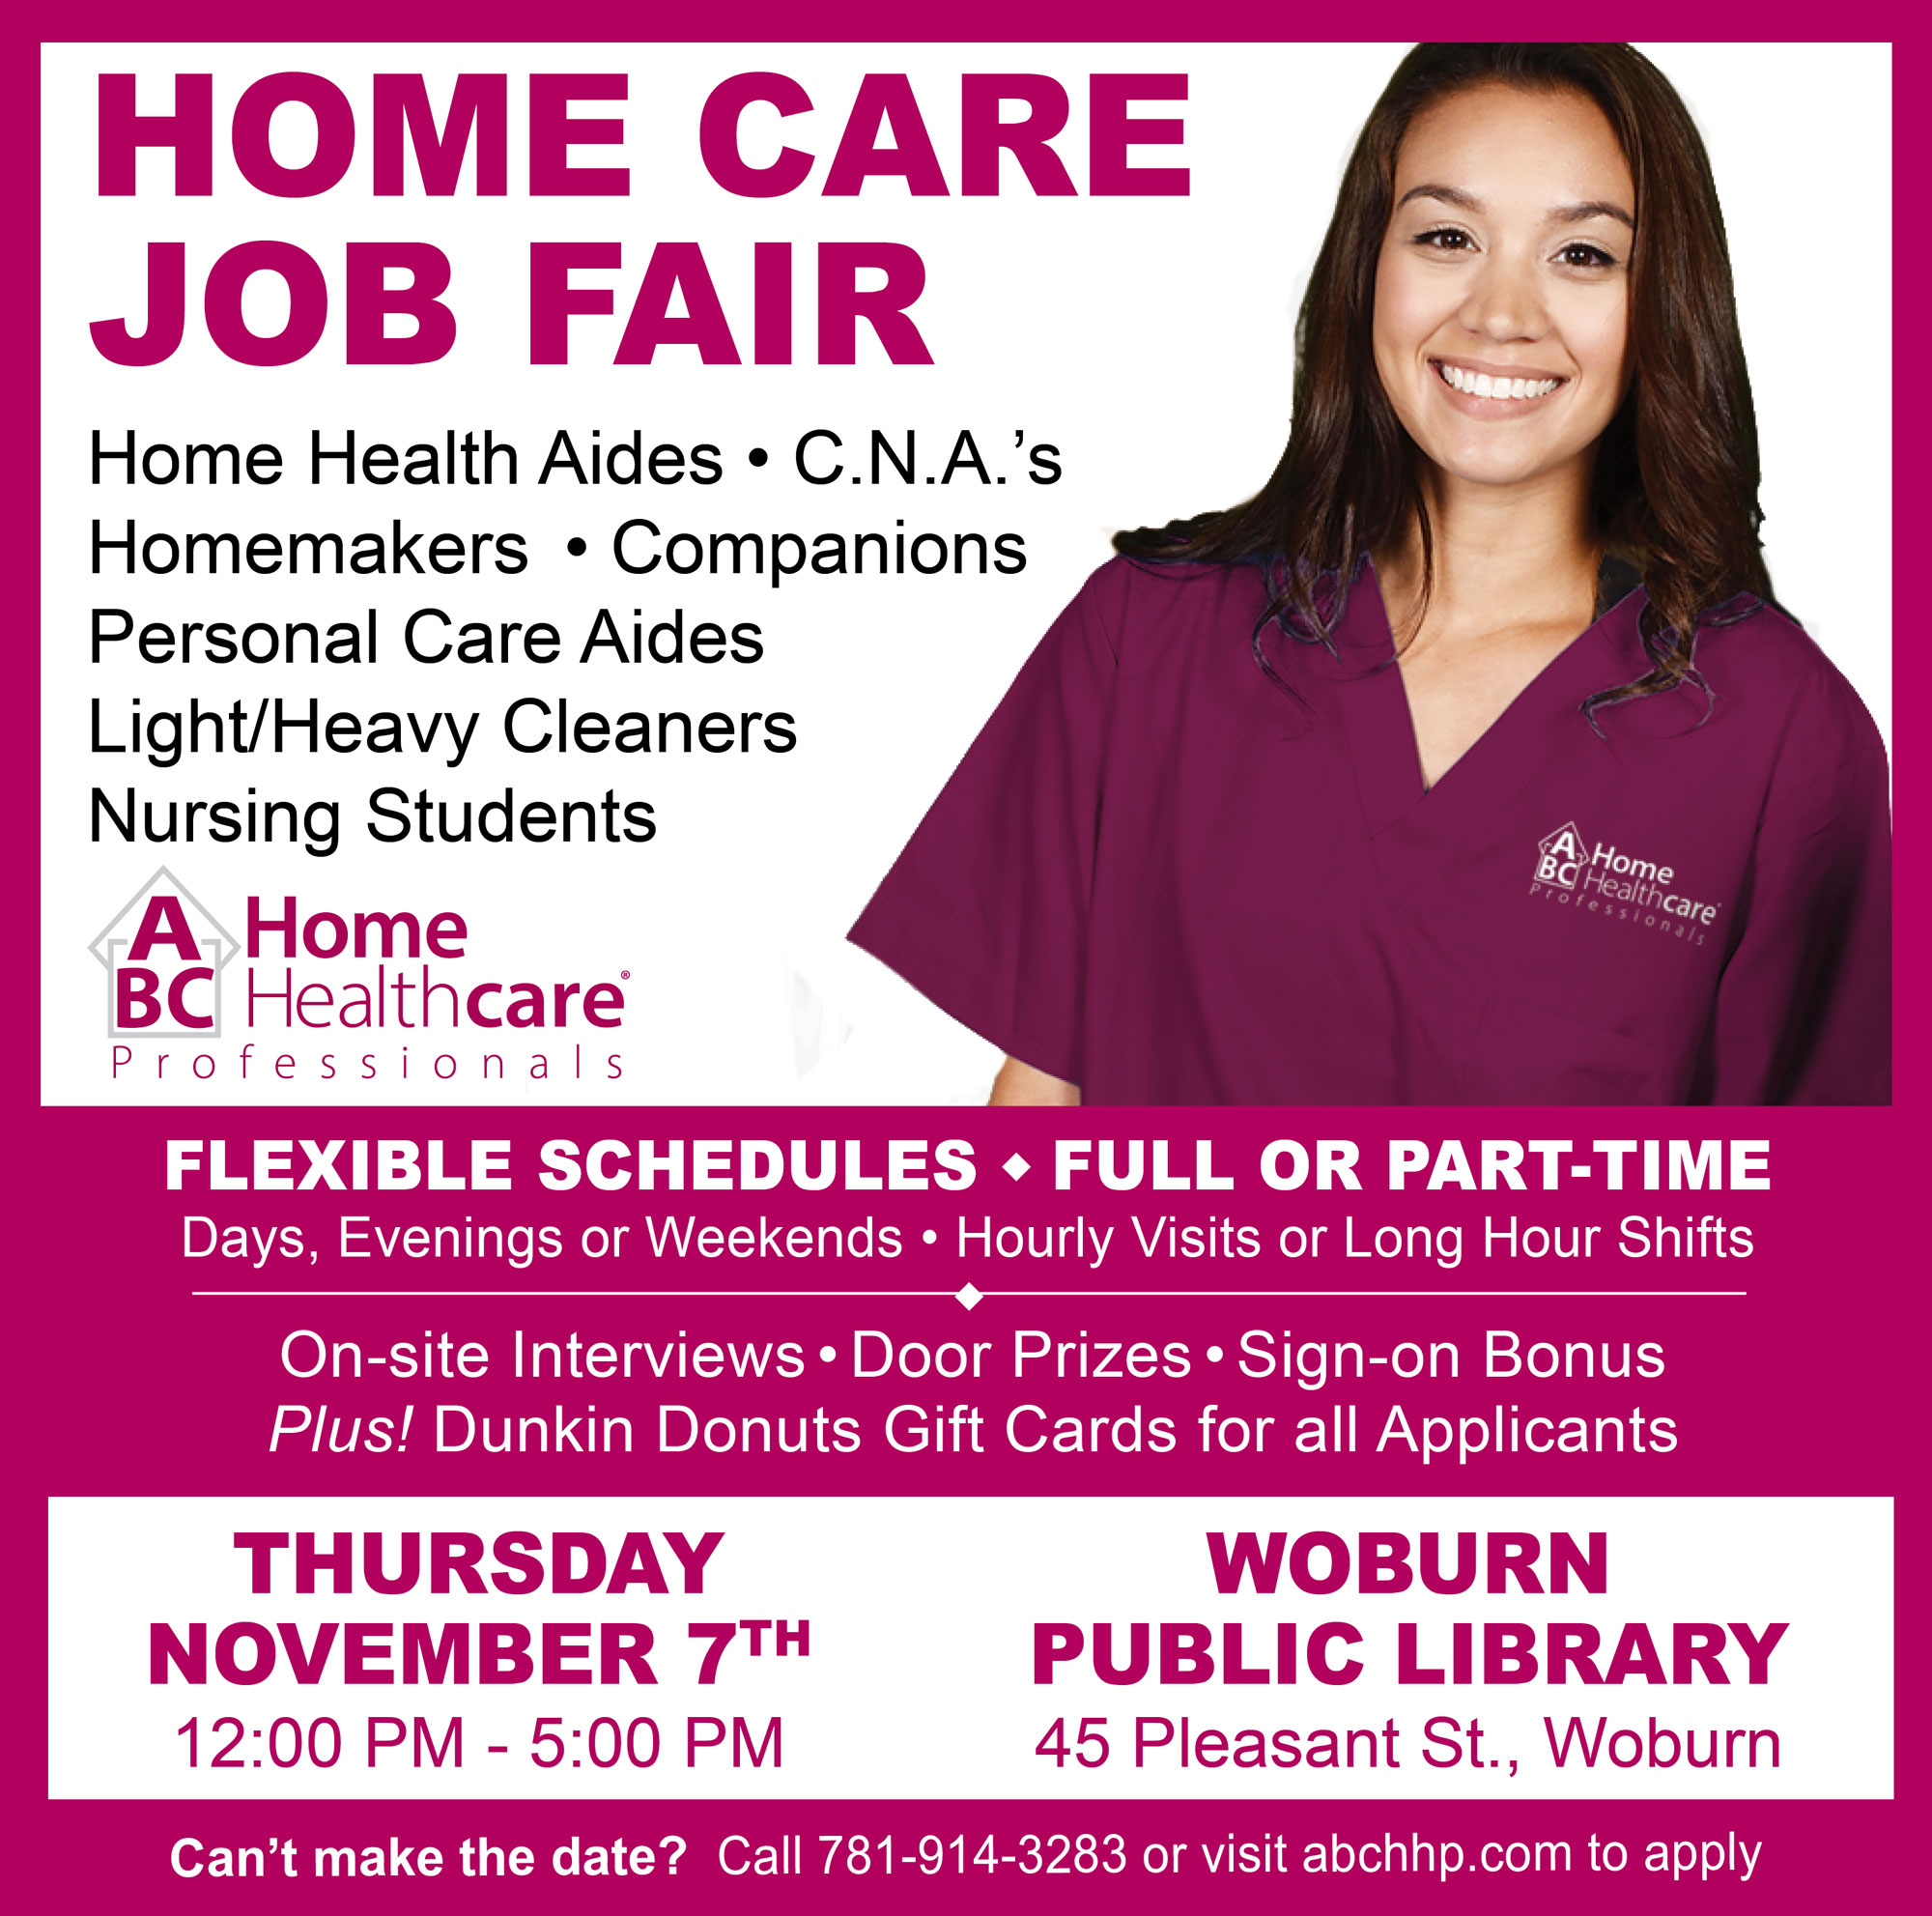 Home Care Job Fair